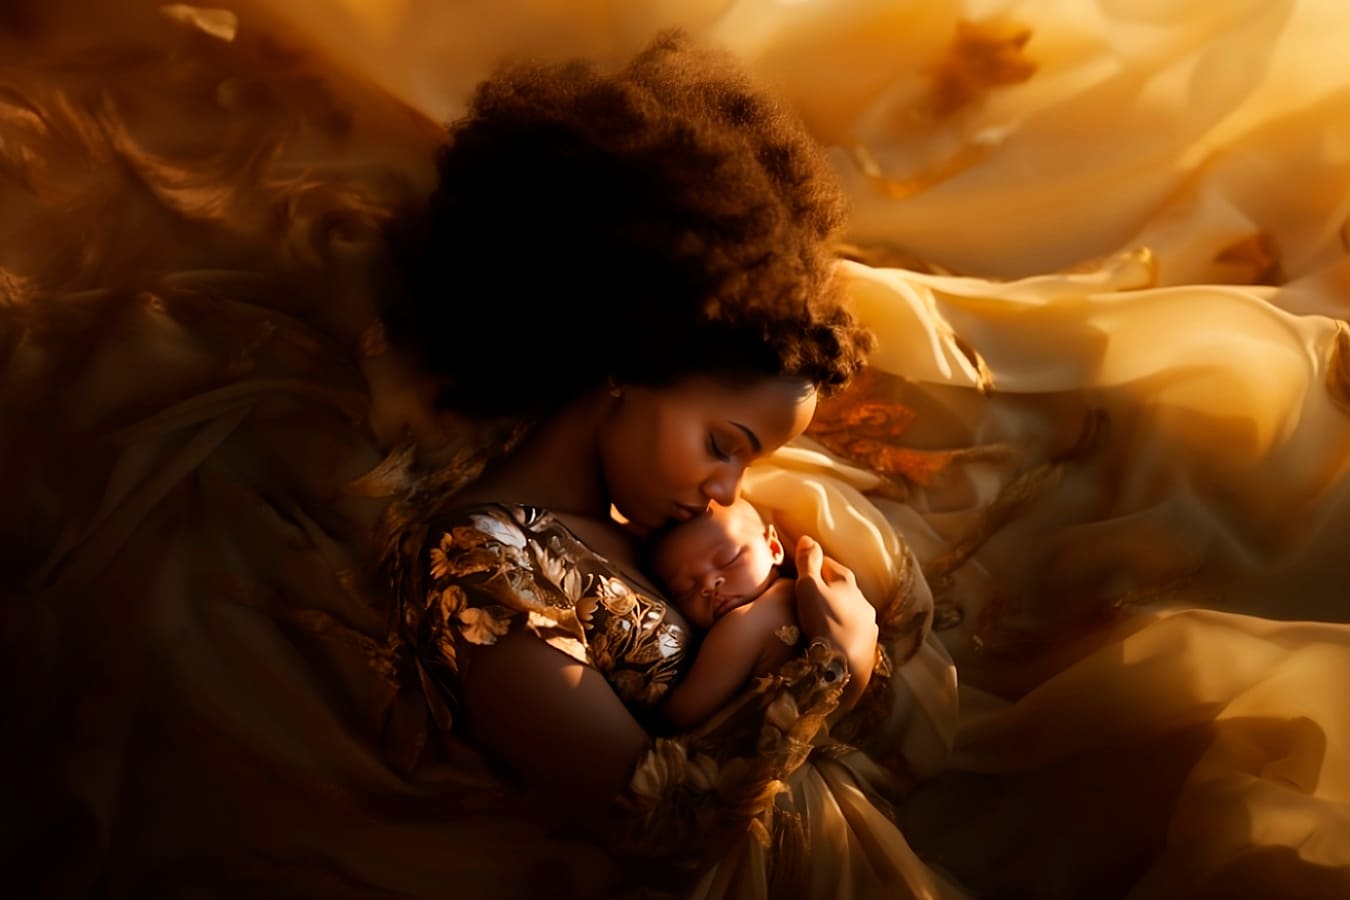 Mulher negra com bebê no colo, envoltos em lençóis dourados - campanha Agosto Dourado.